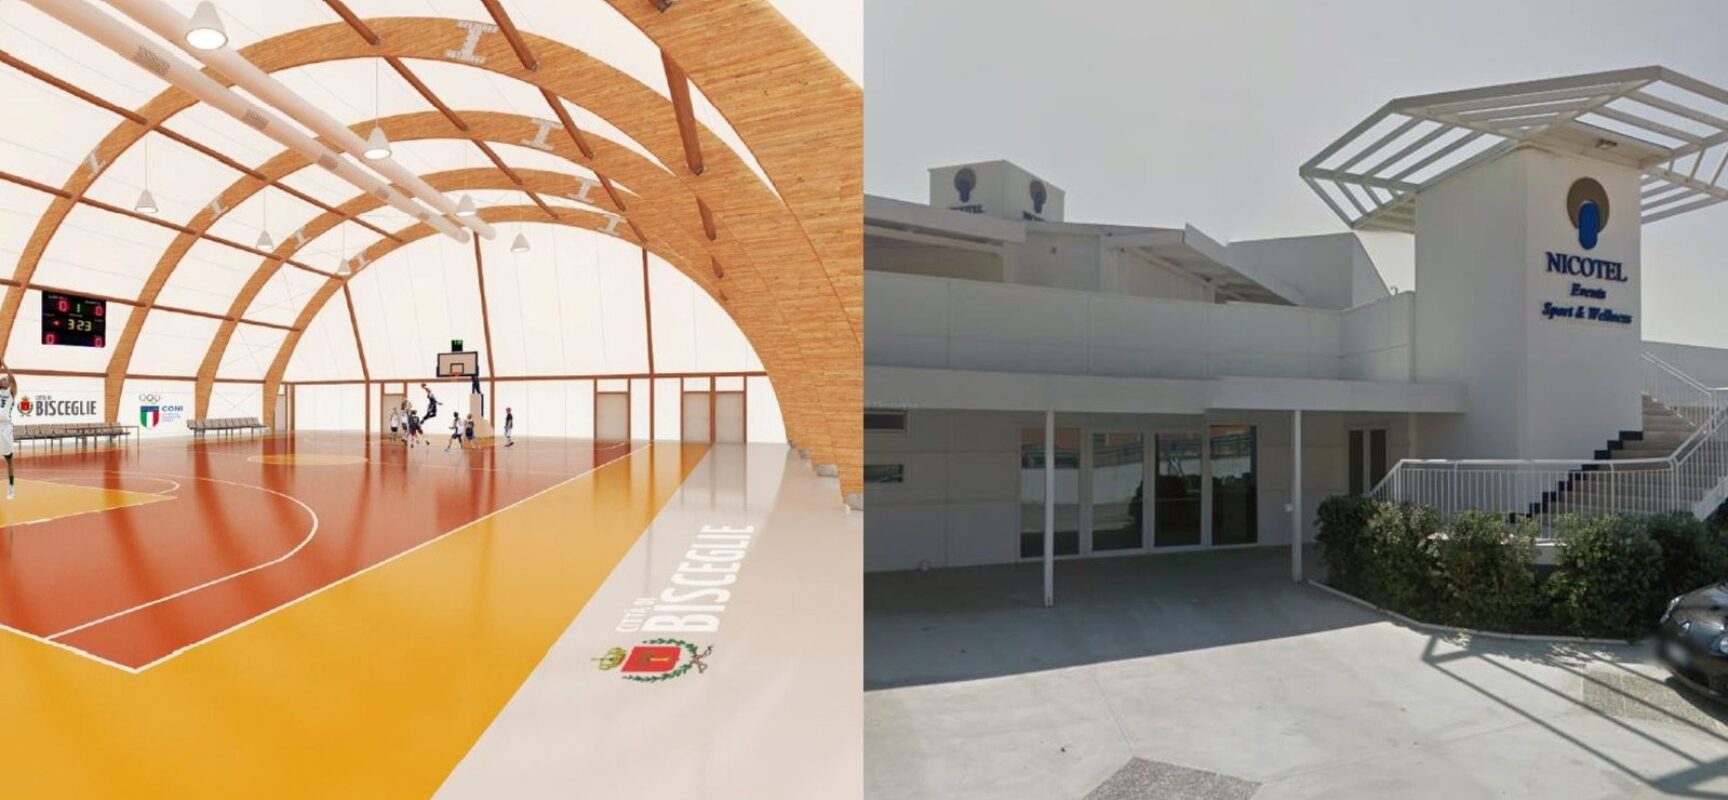 Comune ottiene 2,5 milioni di euro per piscina comunale e un nuovo impianto polivalente indoor